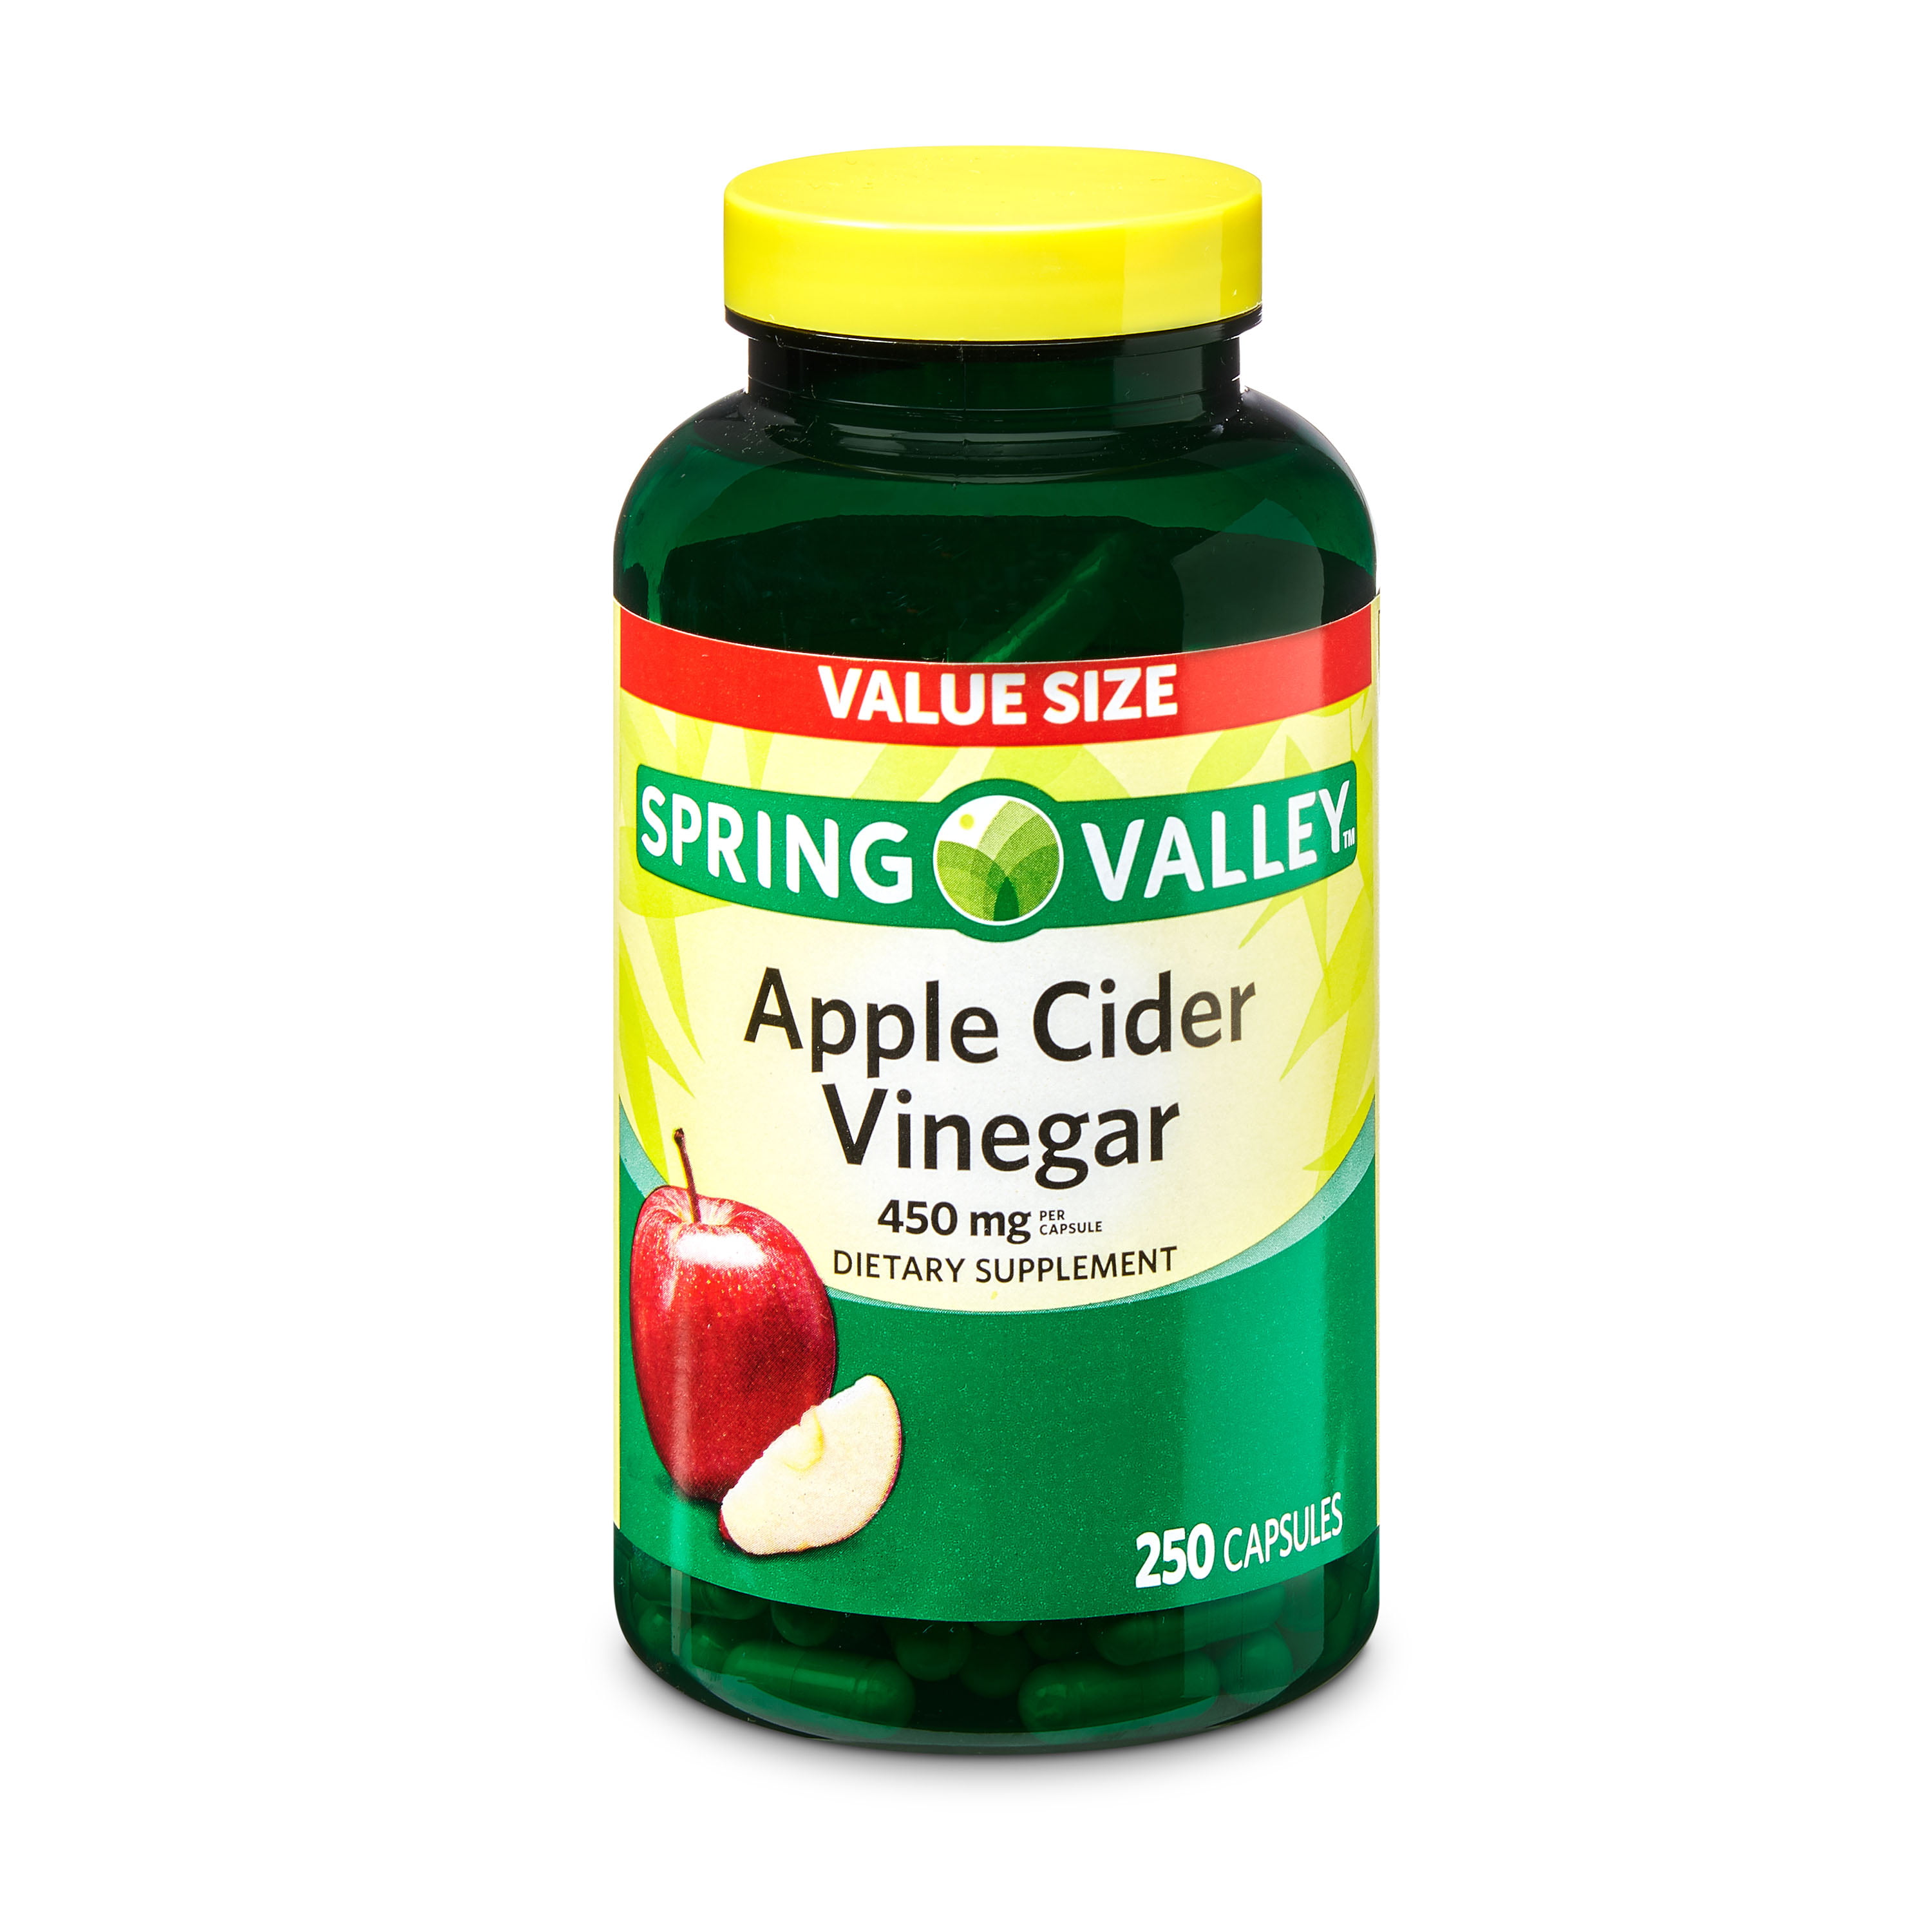 apple cider vinegar tablets for dogs